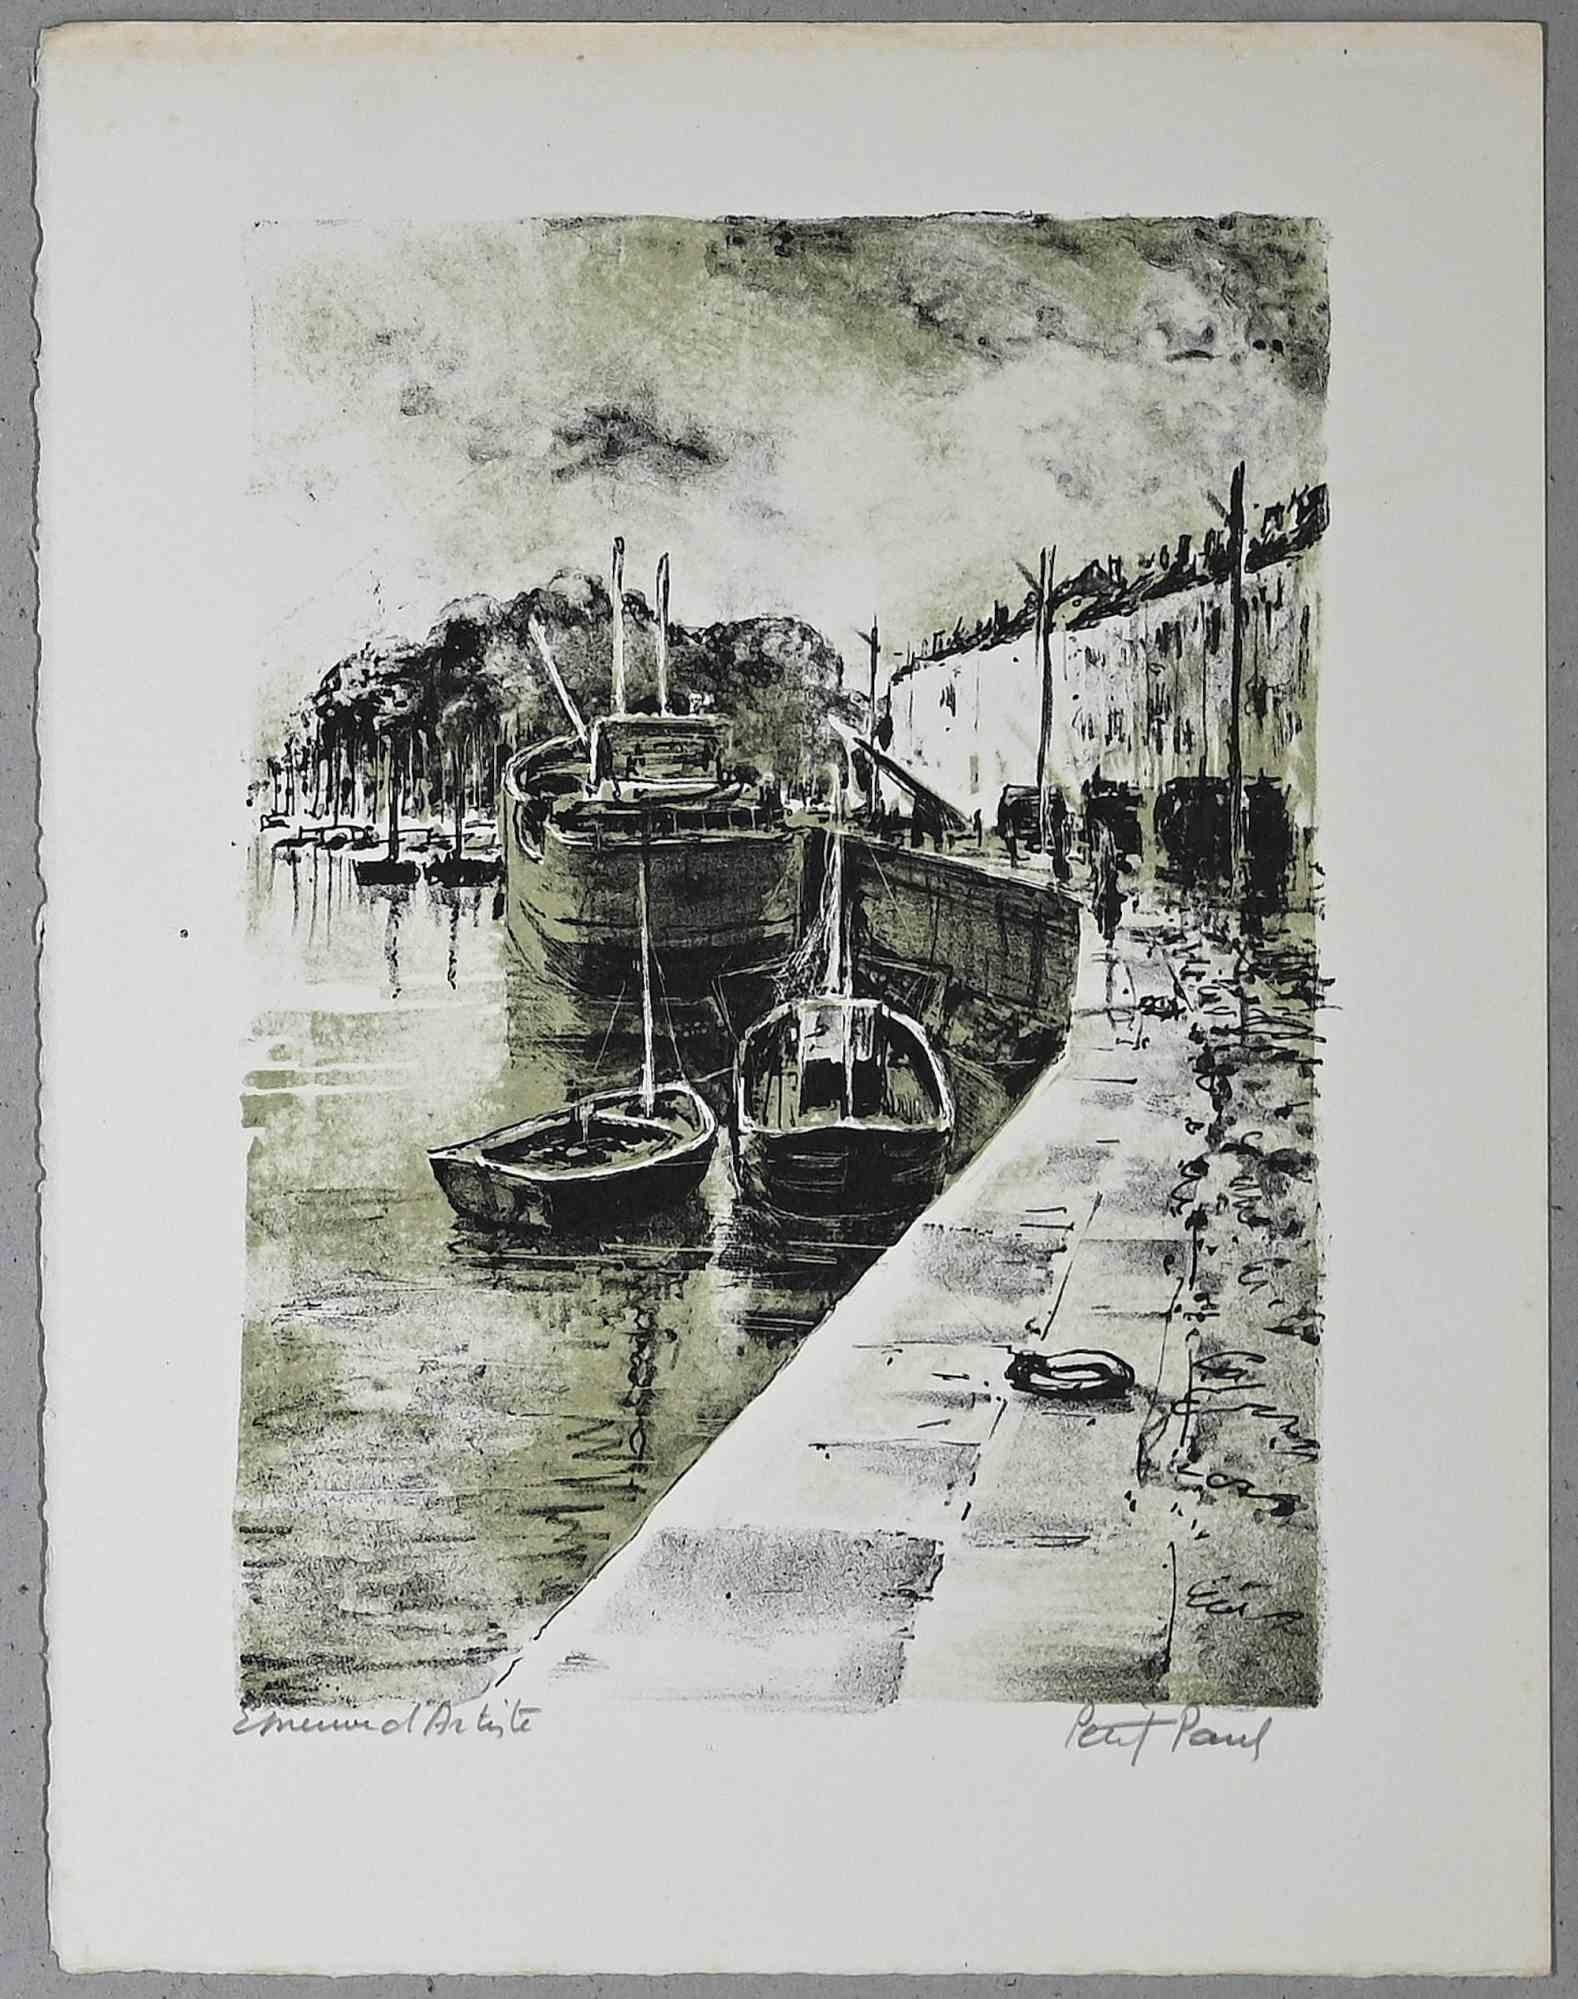 Harbor View ist eine Original-Lithografie von Paul Petit aus der Mitte des 20.

Handsigniert.

Künstlerischer Beweis.

Das Kunstwerk wird mit sicheren Strichen in einer ausgewogenen Komposition dargestellt.